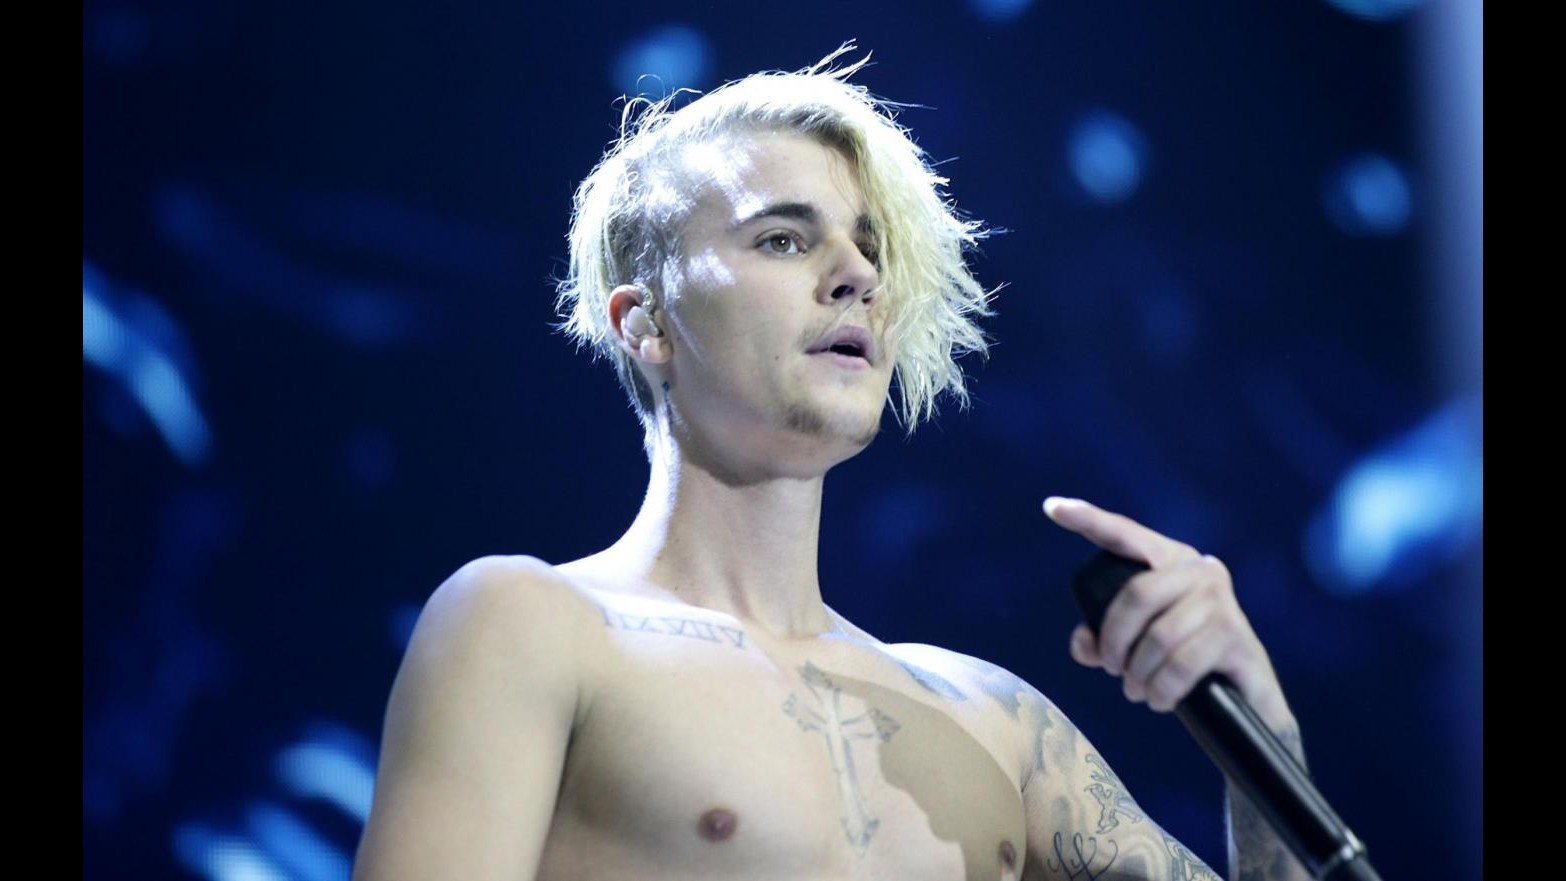 Justin Bieber in Ferrari blu: Non lo faccio per ostentare